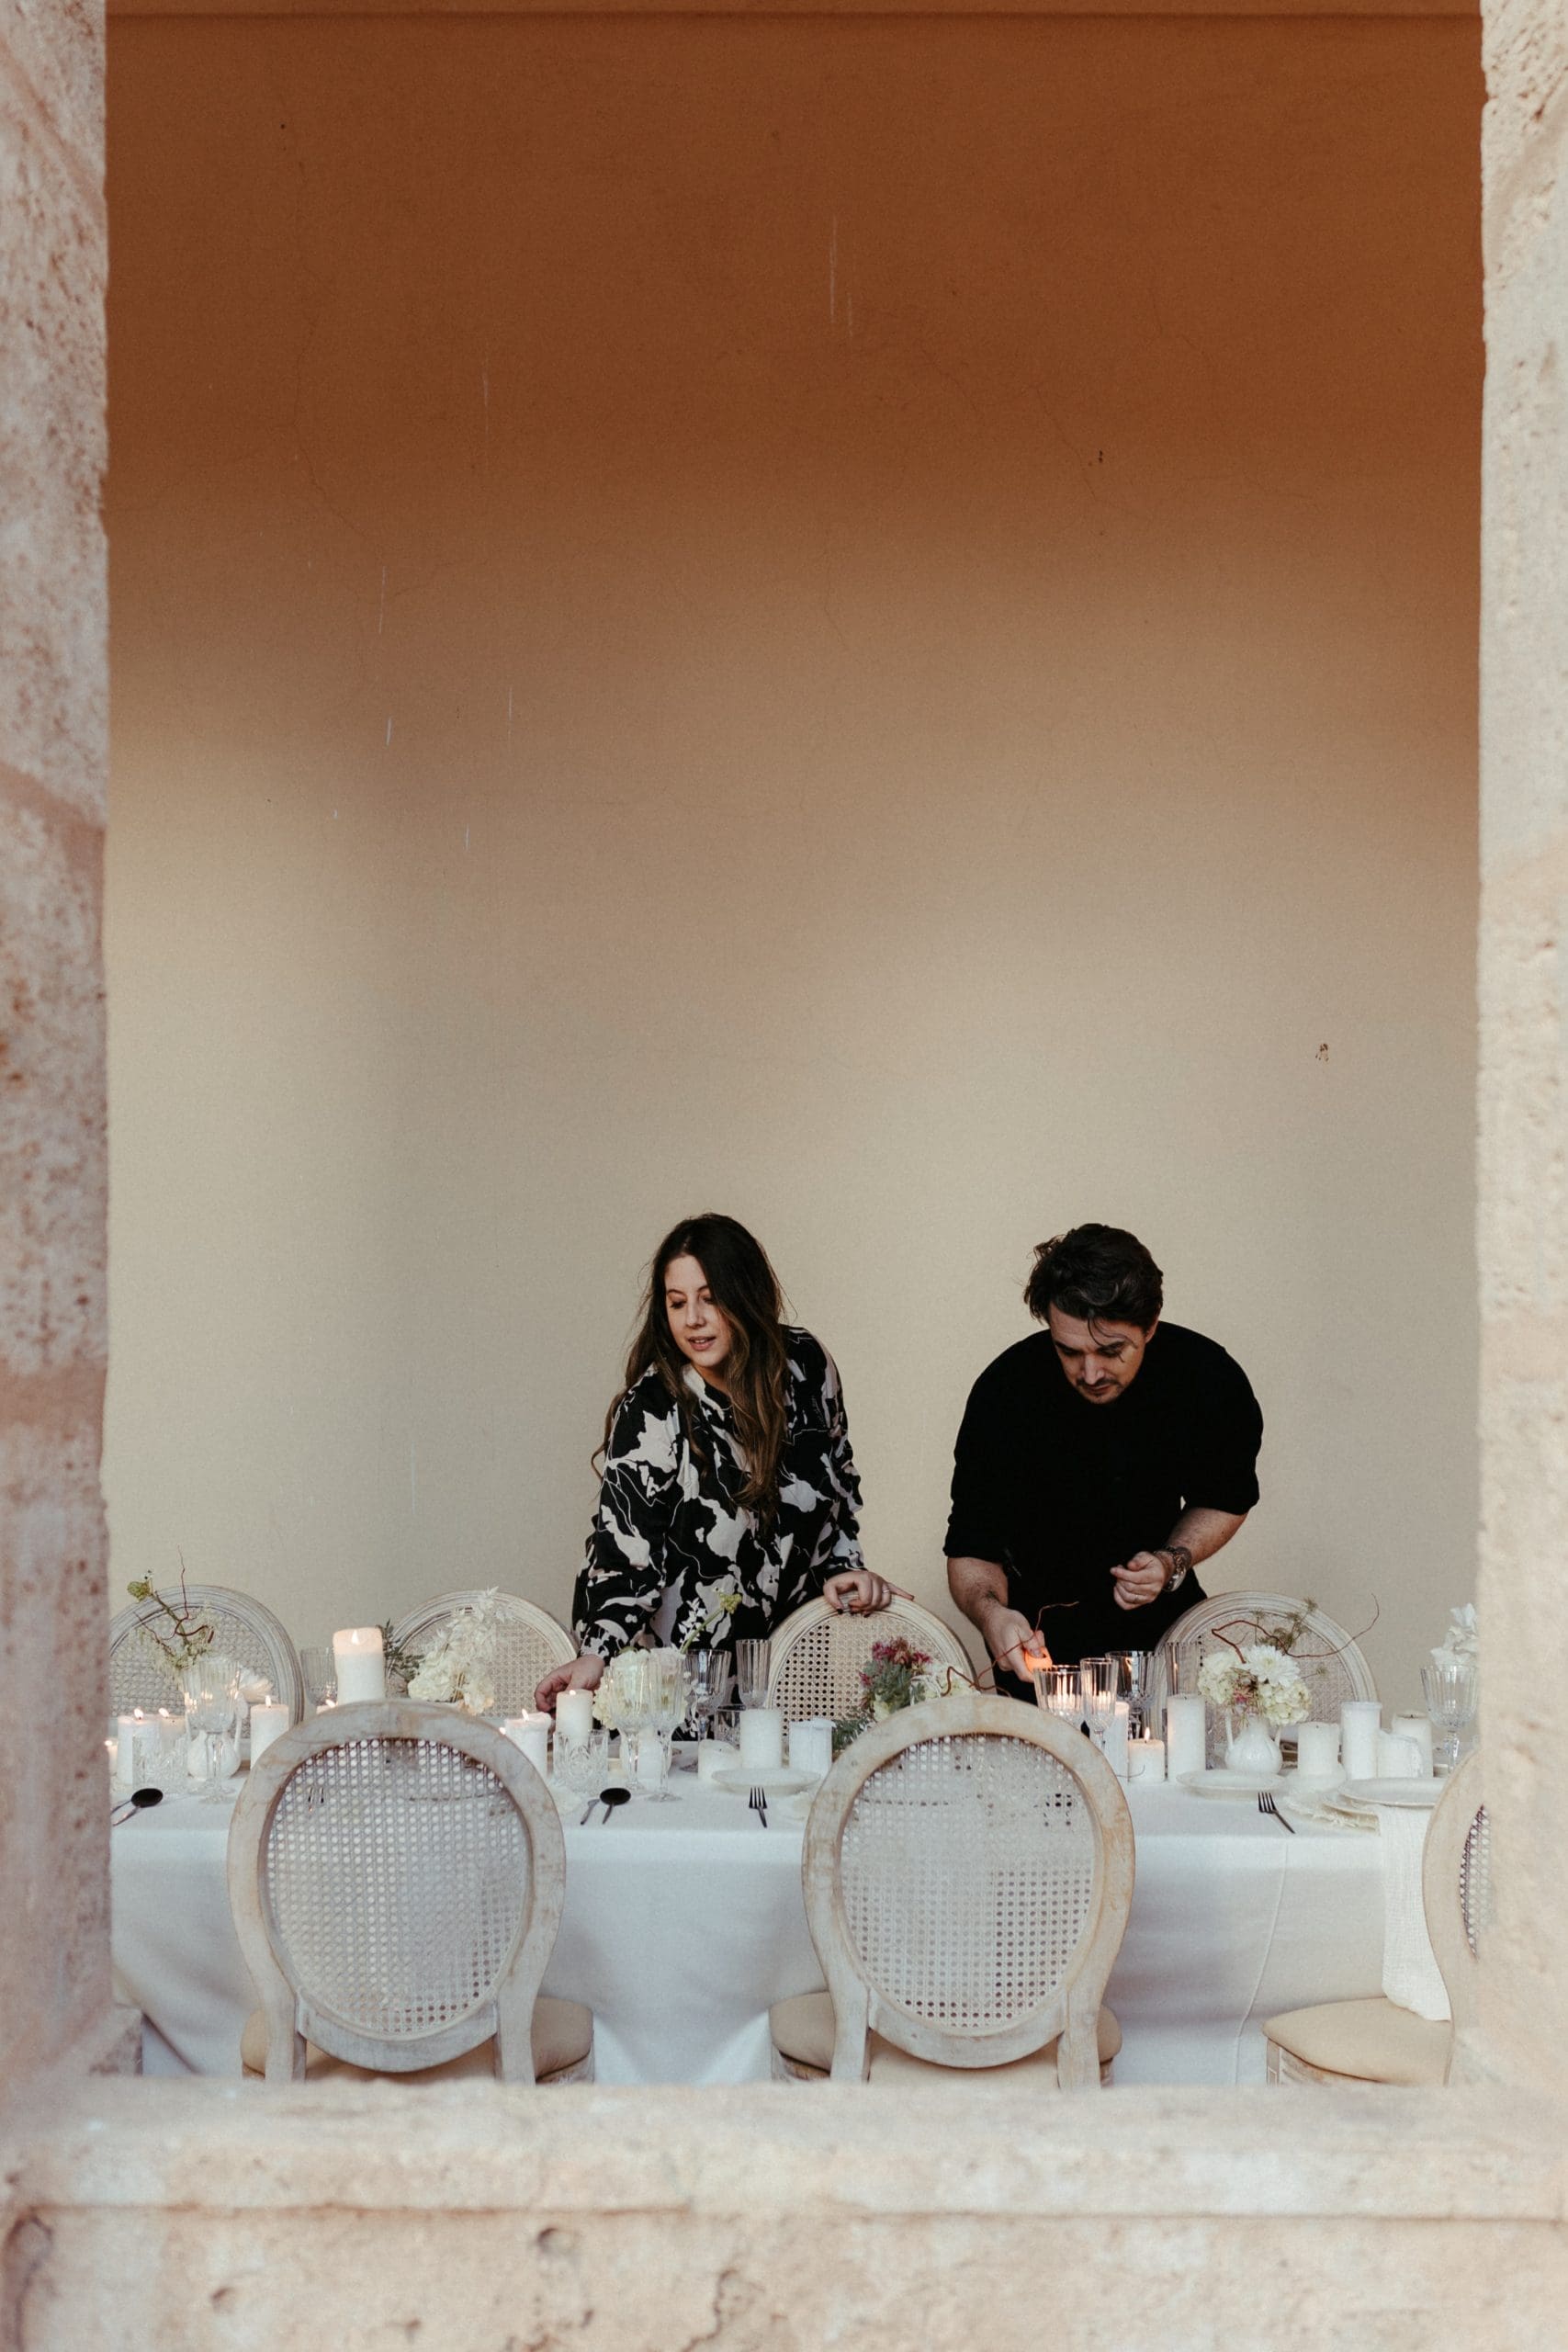 Dani y Estela, fundadores de Bouclé Weddings, decorando una mesa elegante en La Cartuja de Ara Christi, Valencia, para una boda.